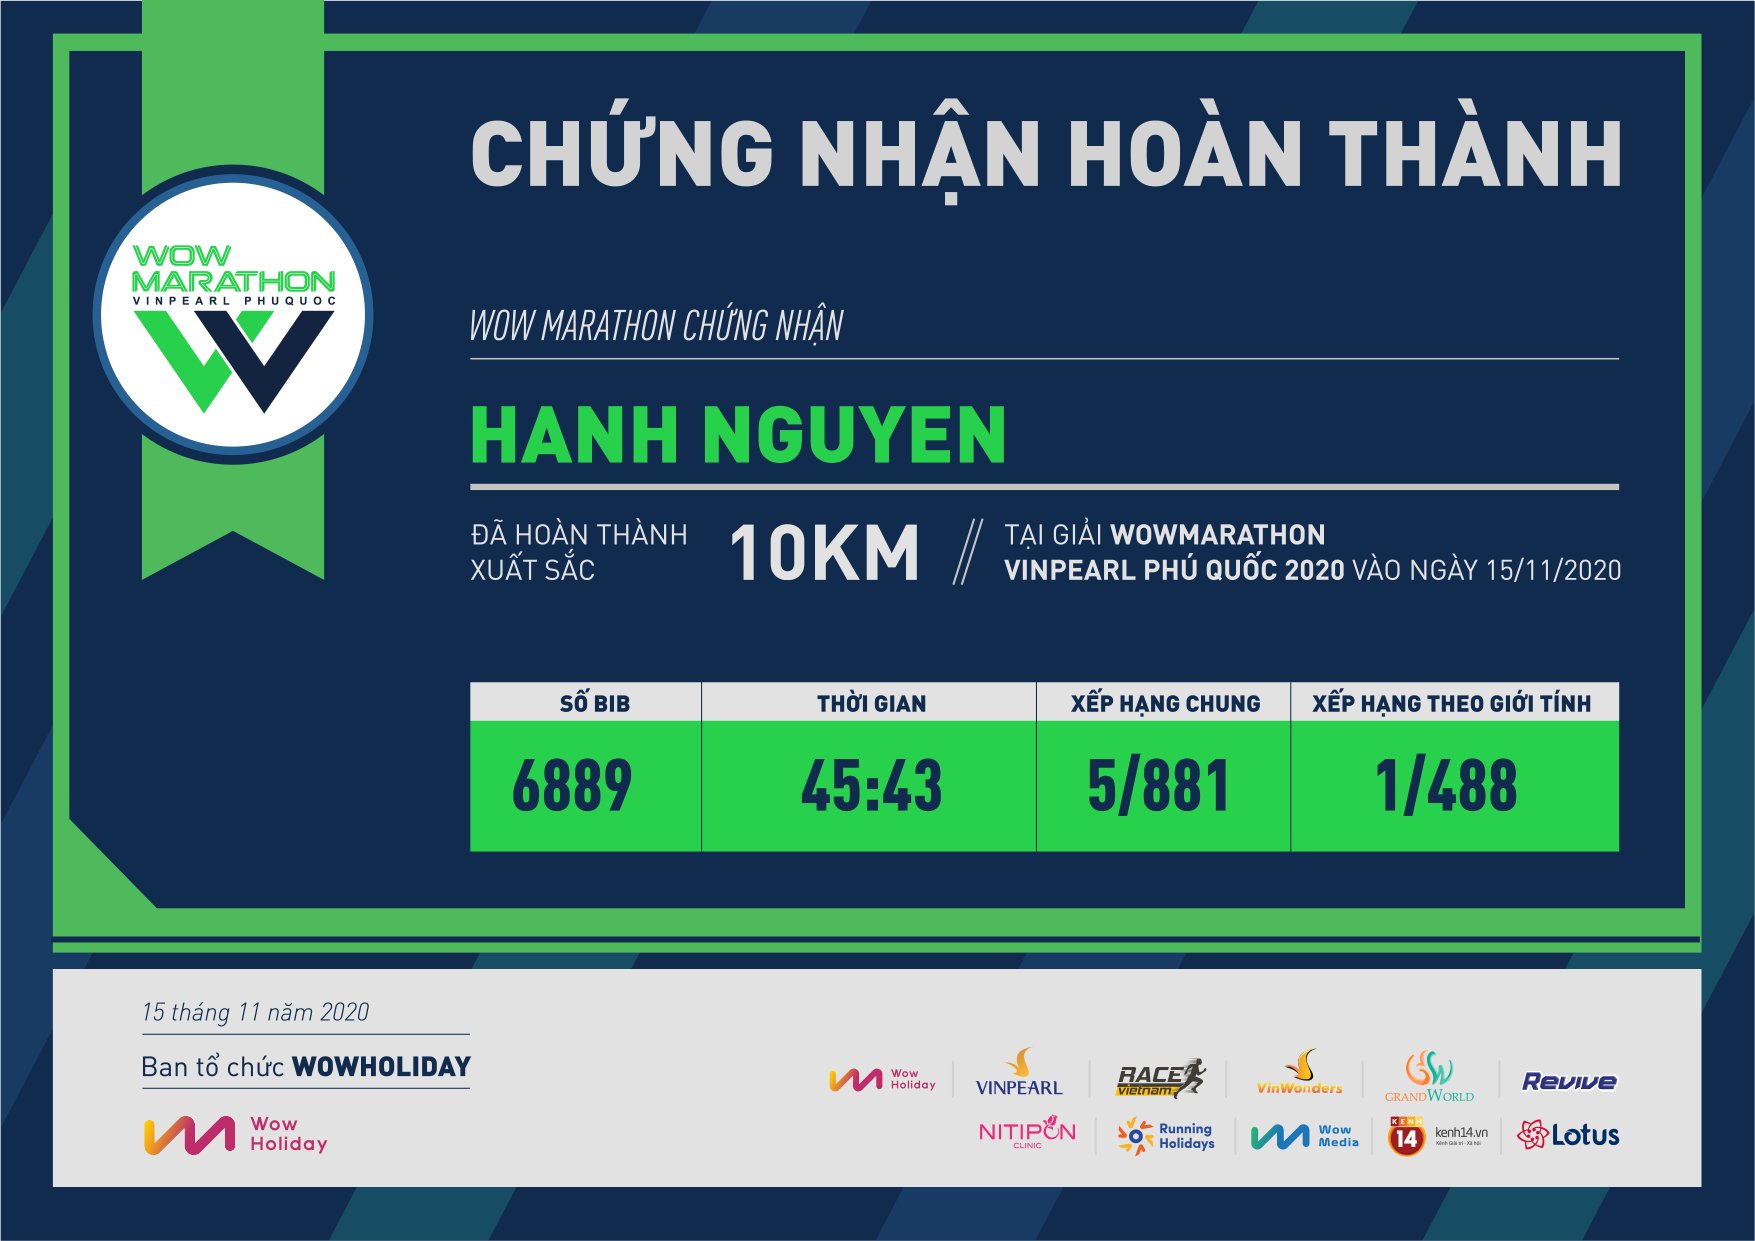 6889 - Hanh Nguyen